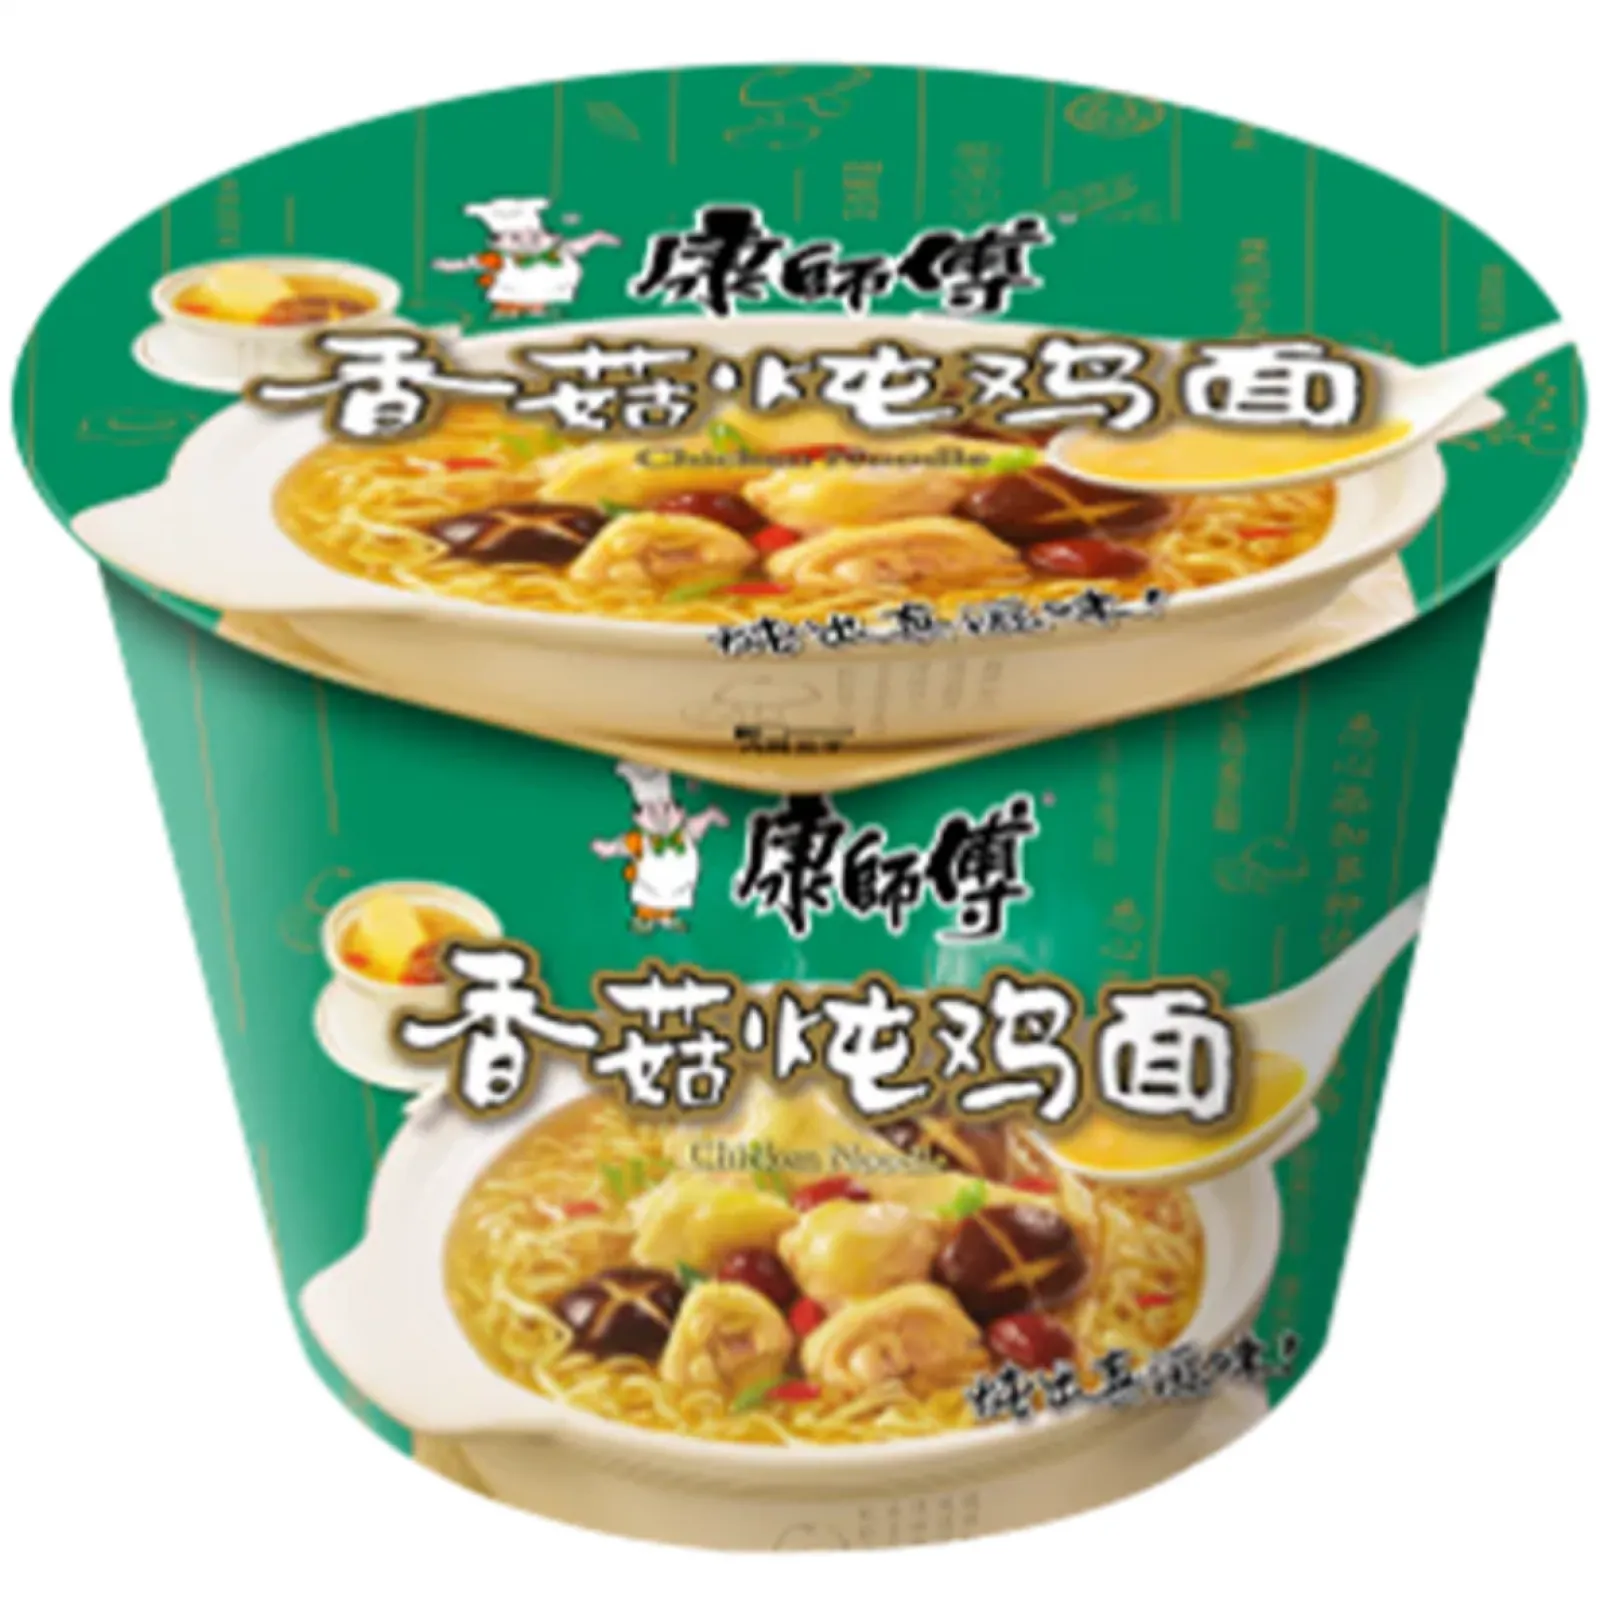 Master Kong Kang Shi Fu Noodle Bowl: Chicken Mushroom